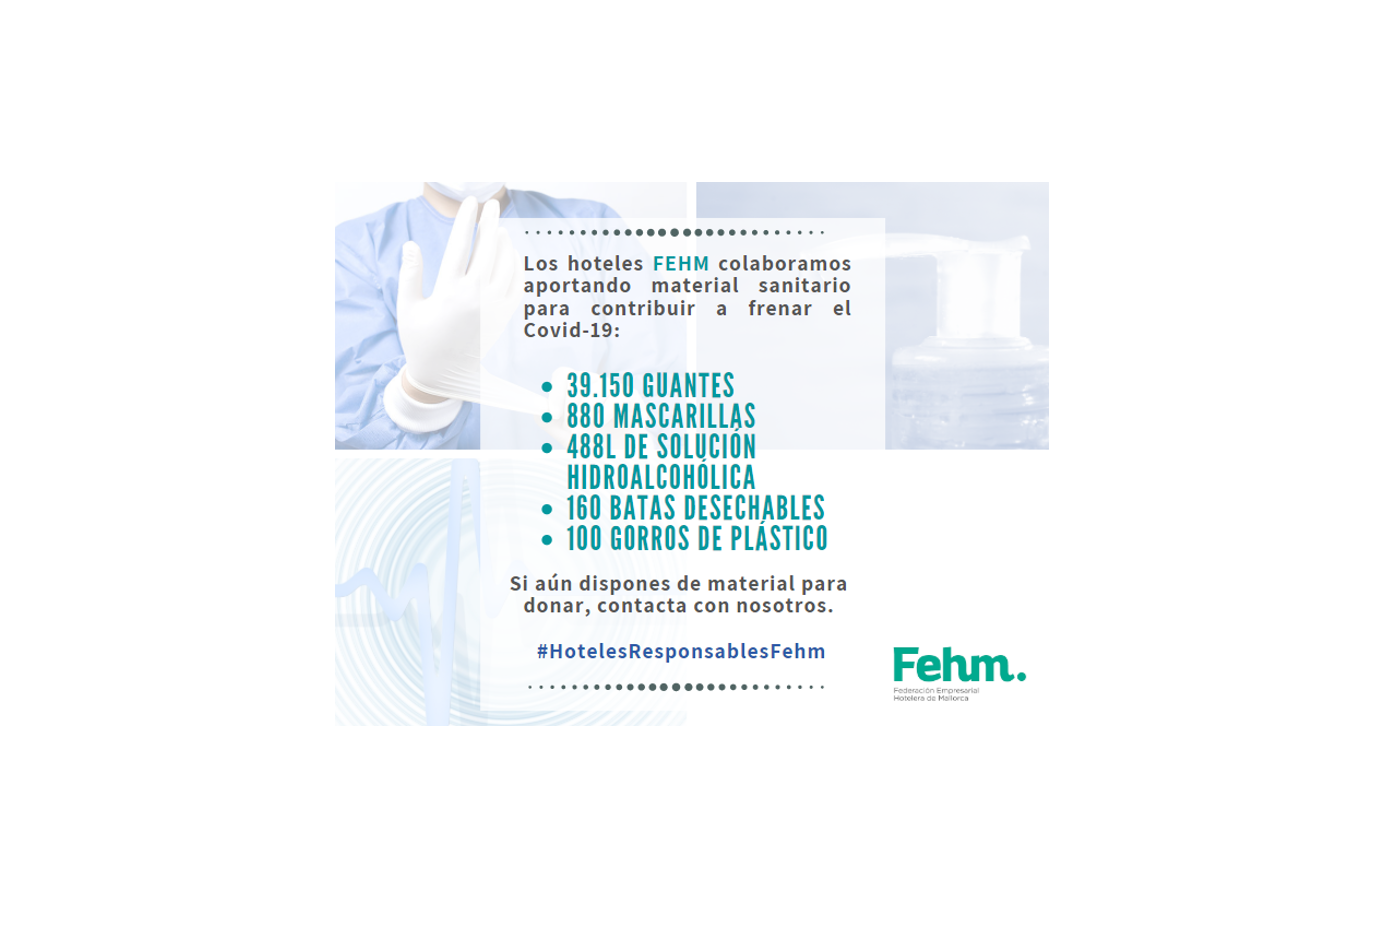 Los establecimientos asociados a la FEHM muestran su vertiente más responsable y solidaria donando material sanitario para contribuir a frenar el Covid-19